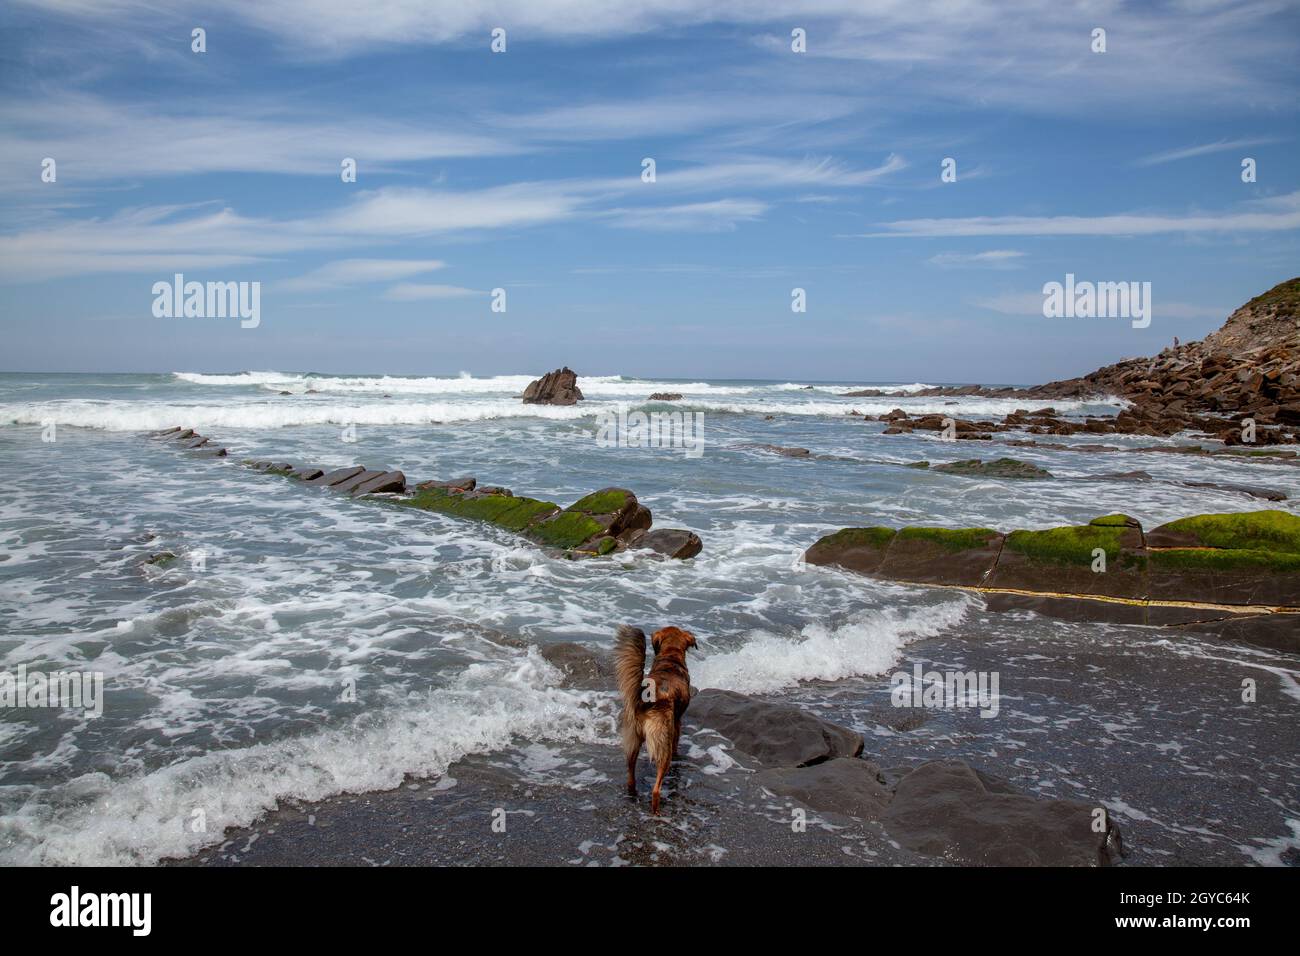 Hund am Ufer von Barrica in Spanien mit Steinen, die mit Algen bedeckt aus dem Wasser ragen Stockfoto